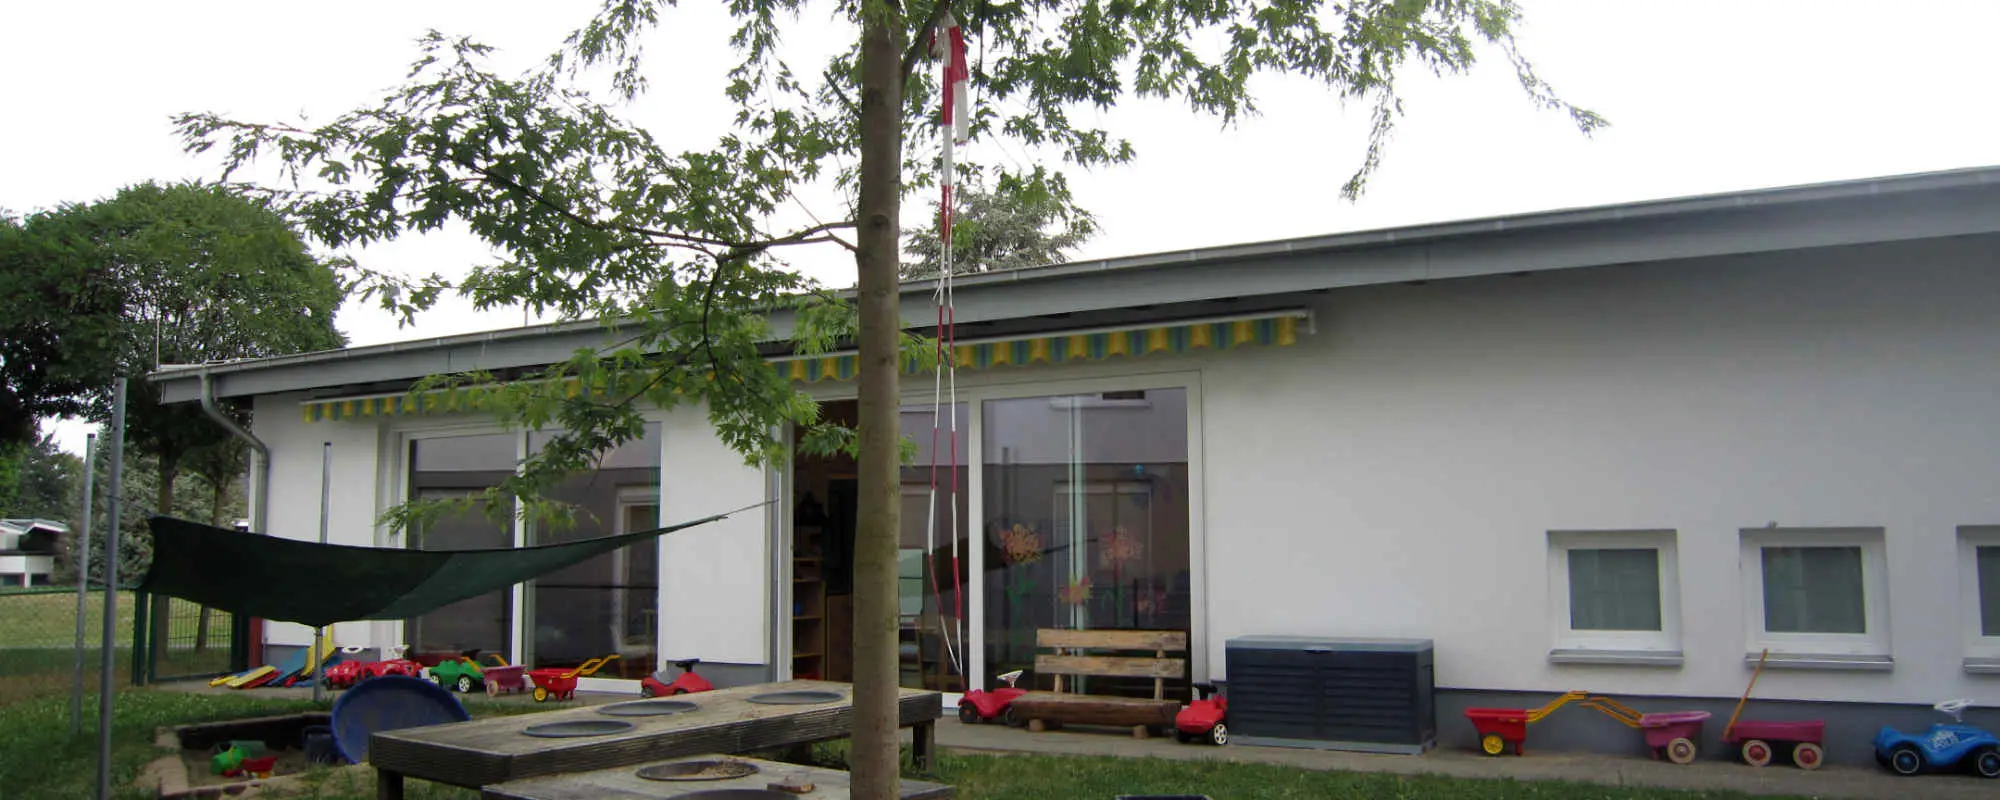 Kindertagesstätte am RheinAhrCampus